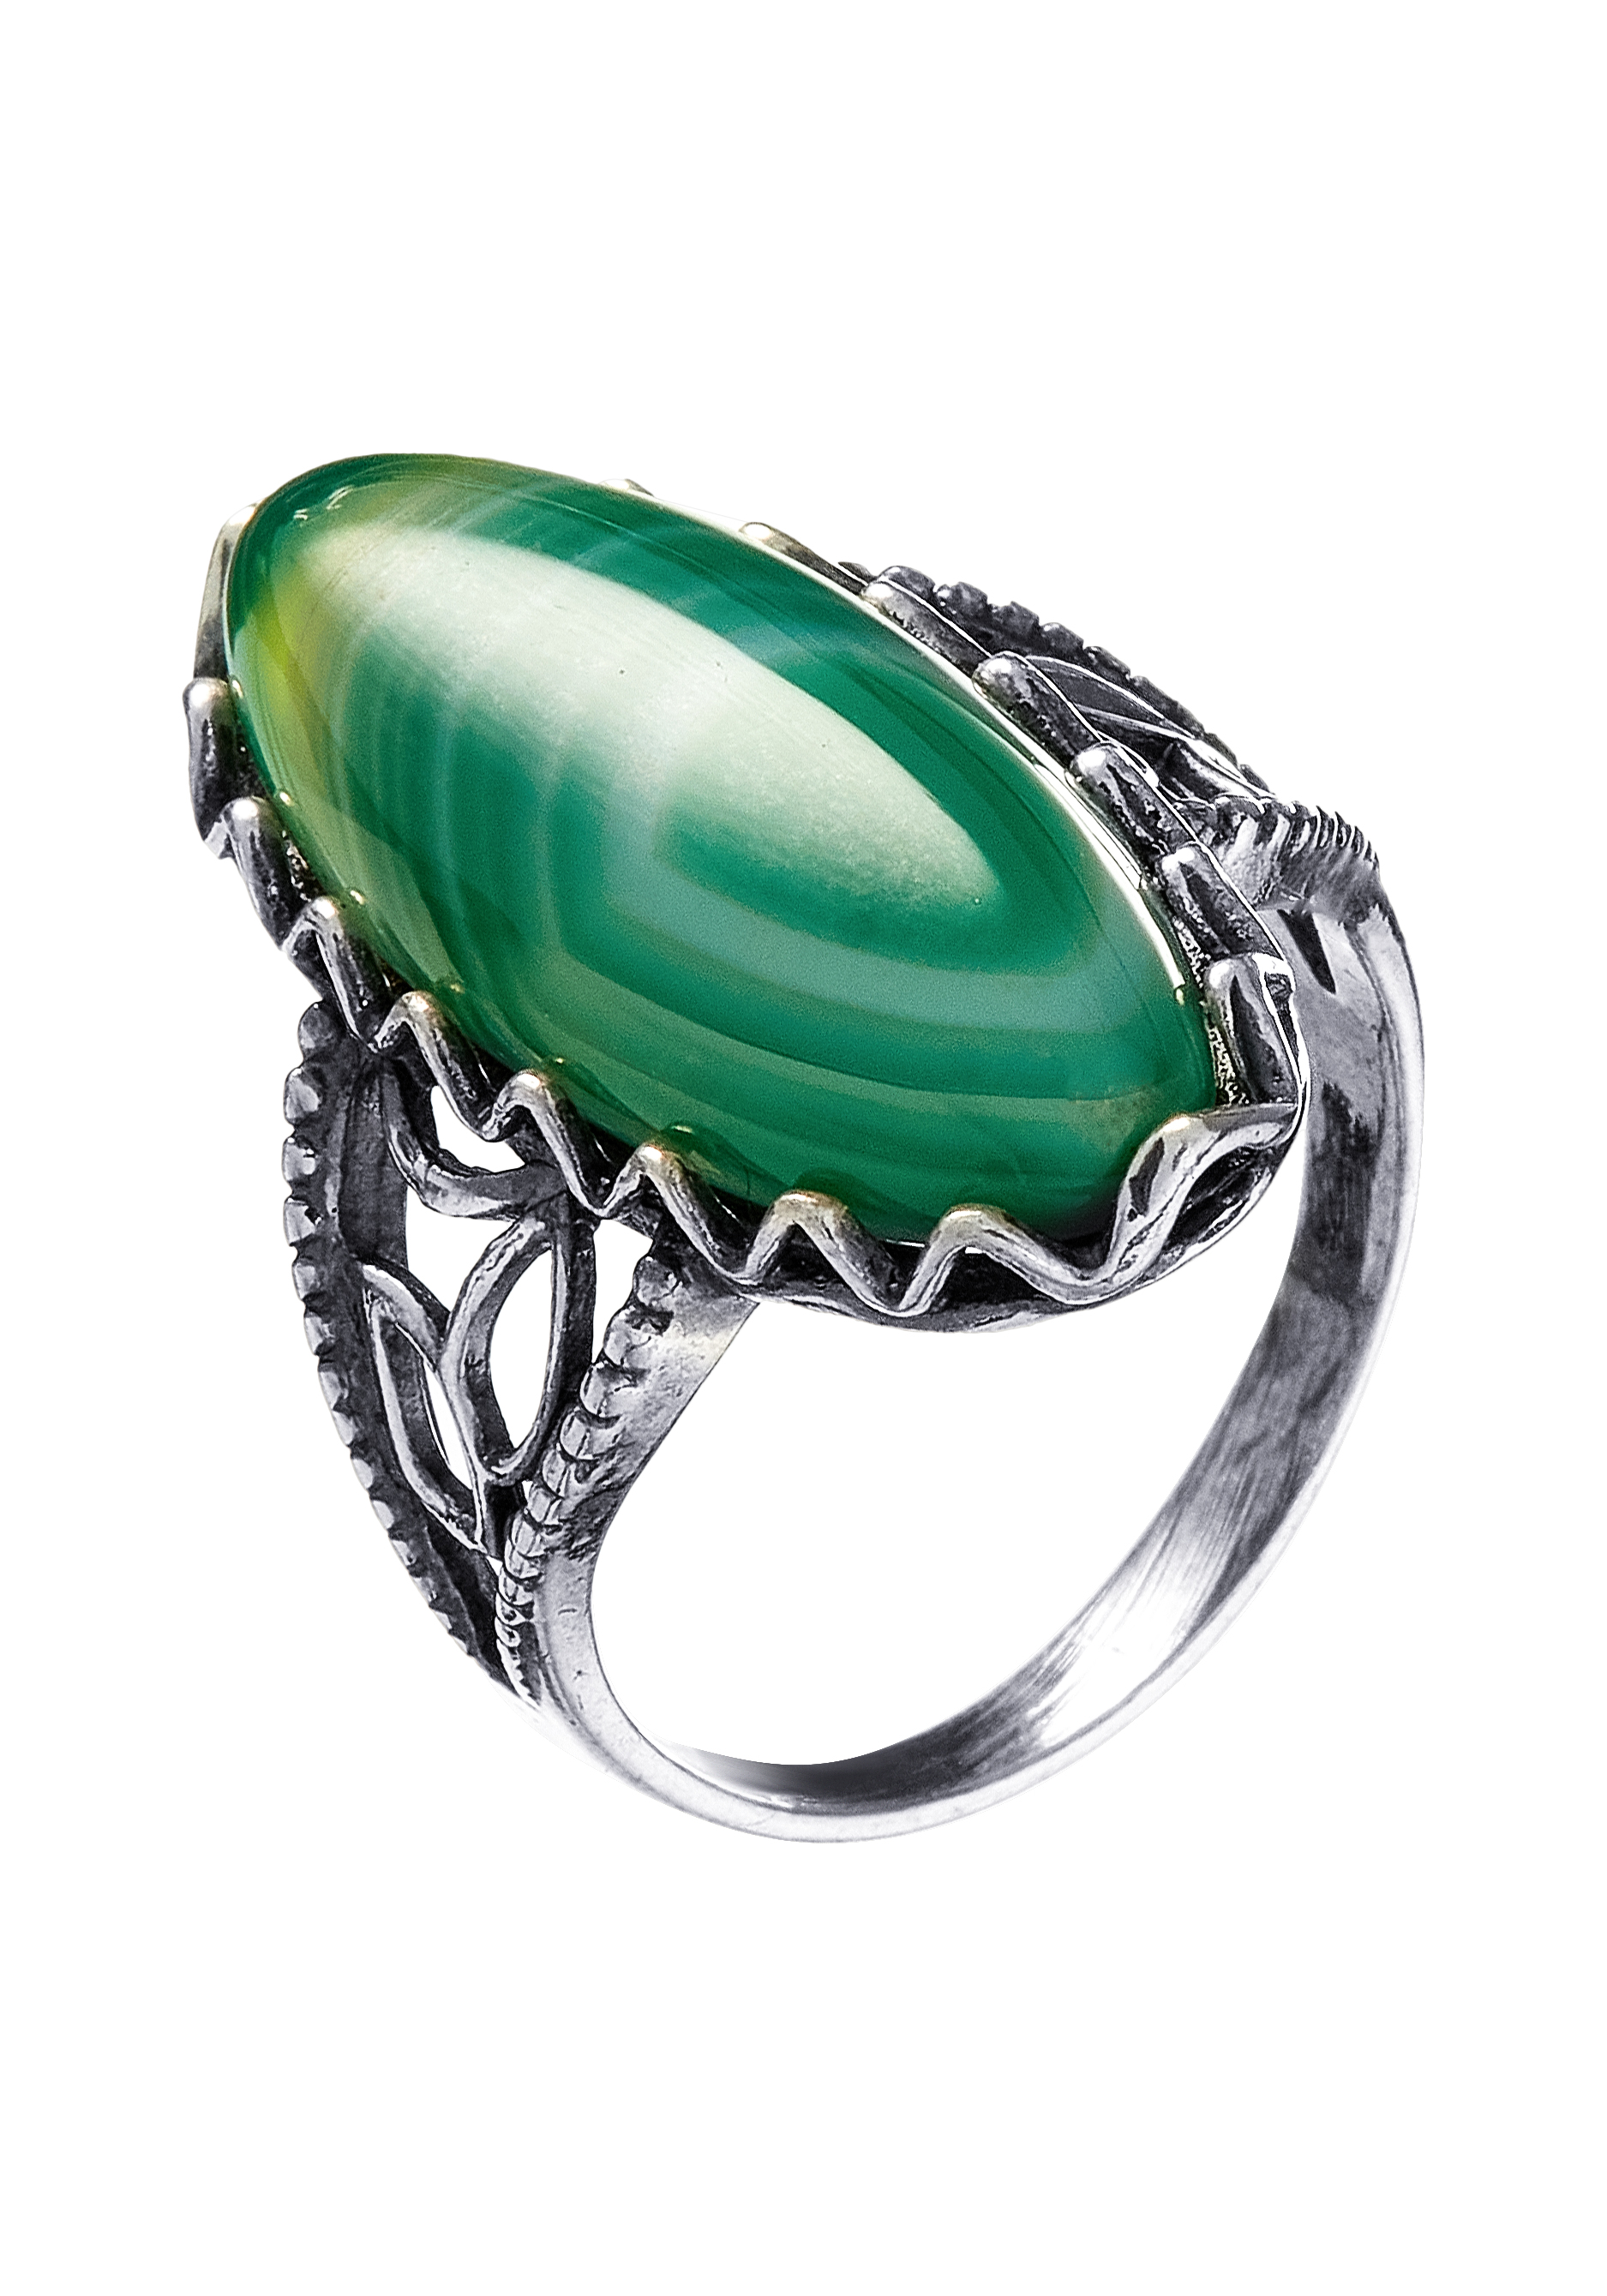 Комплект "Богемный образ" Apsara, цвет зеленый, размер 18 перстень - фото 3